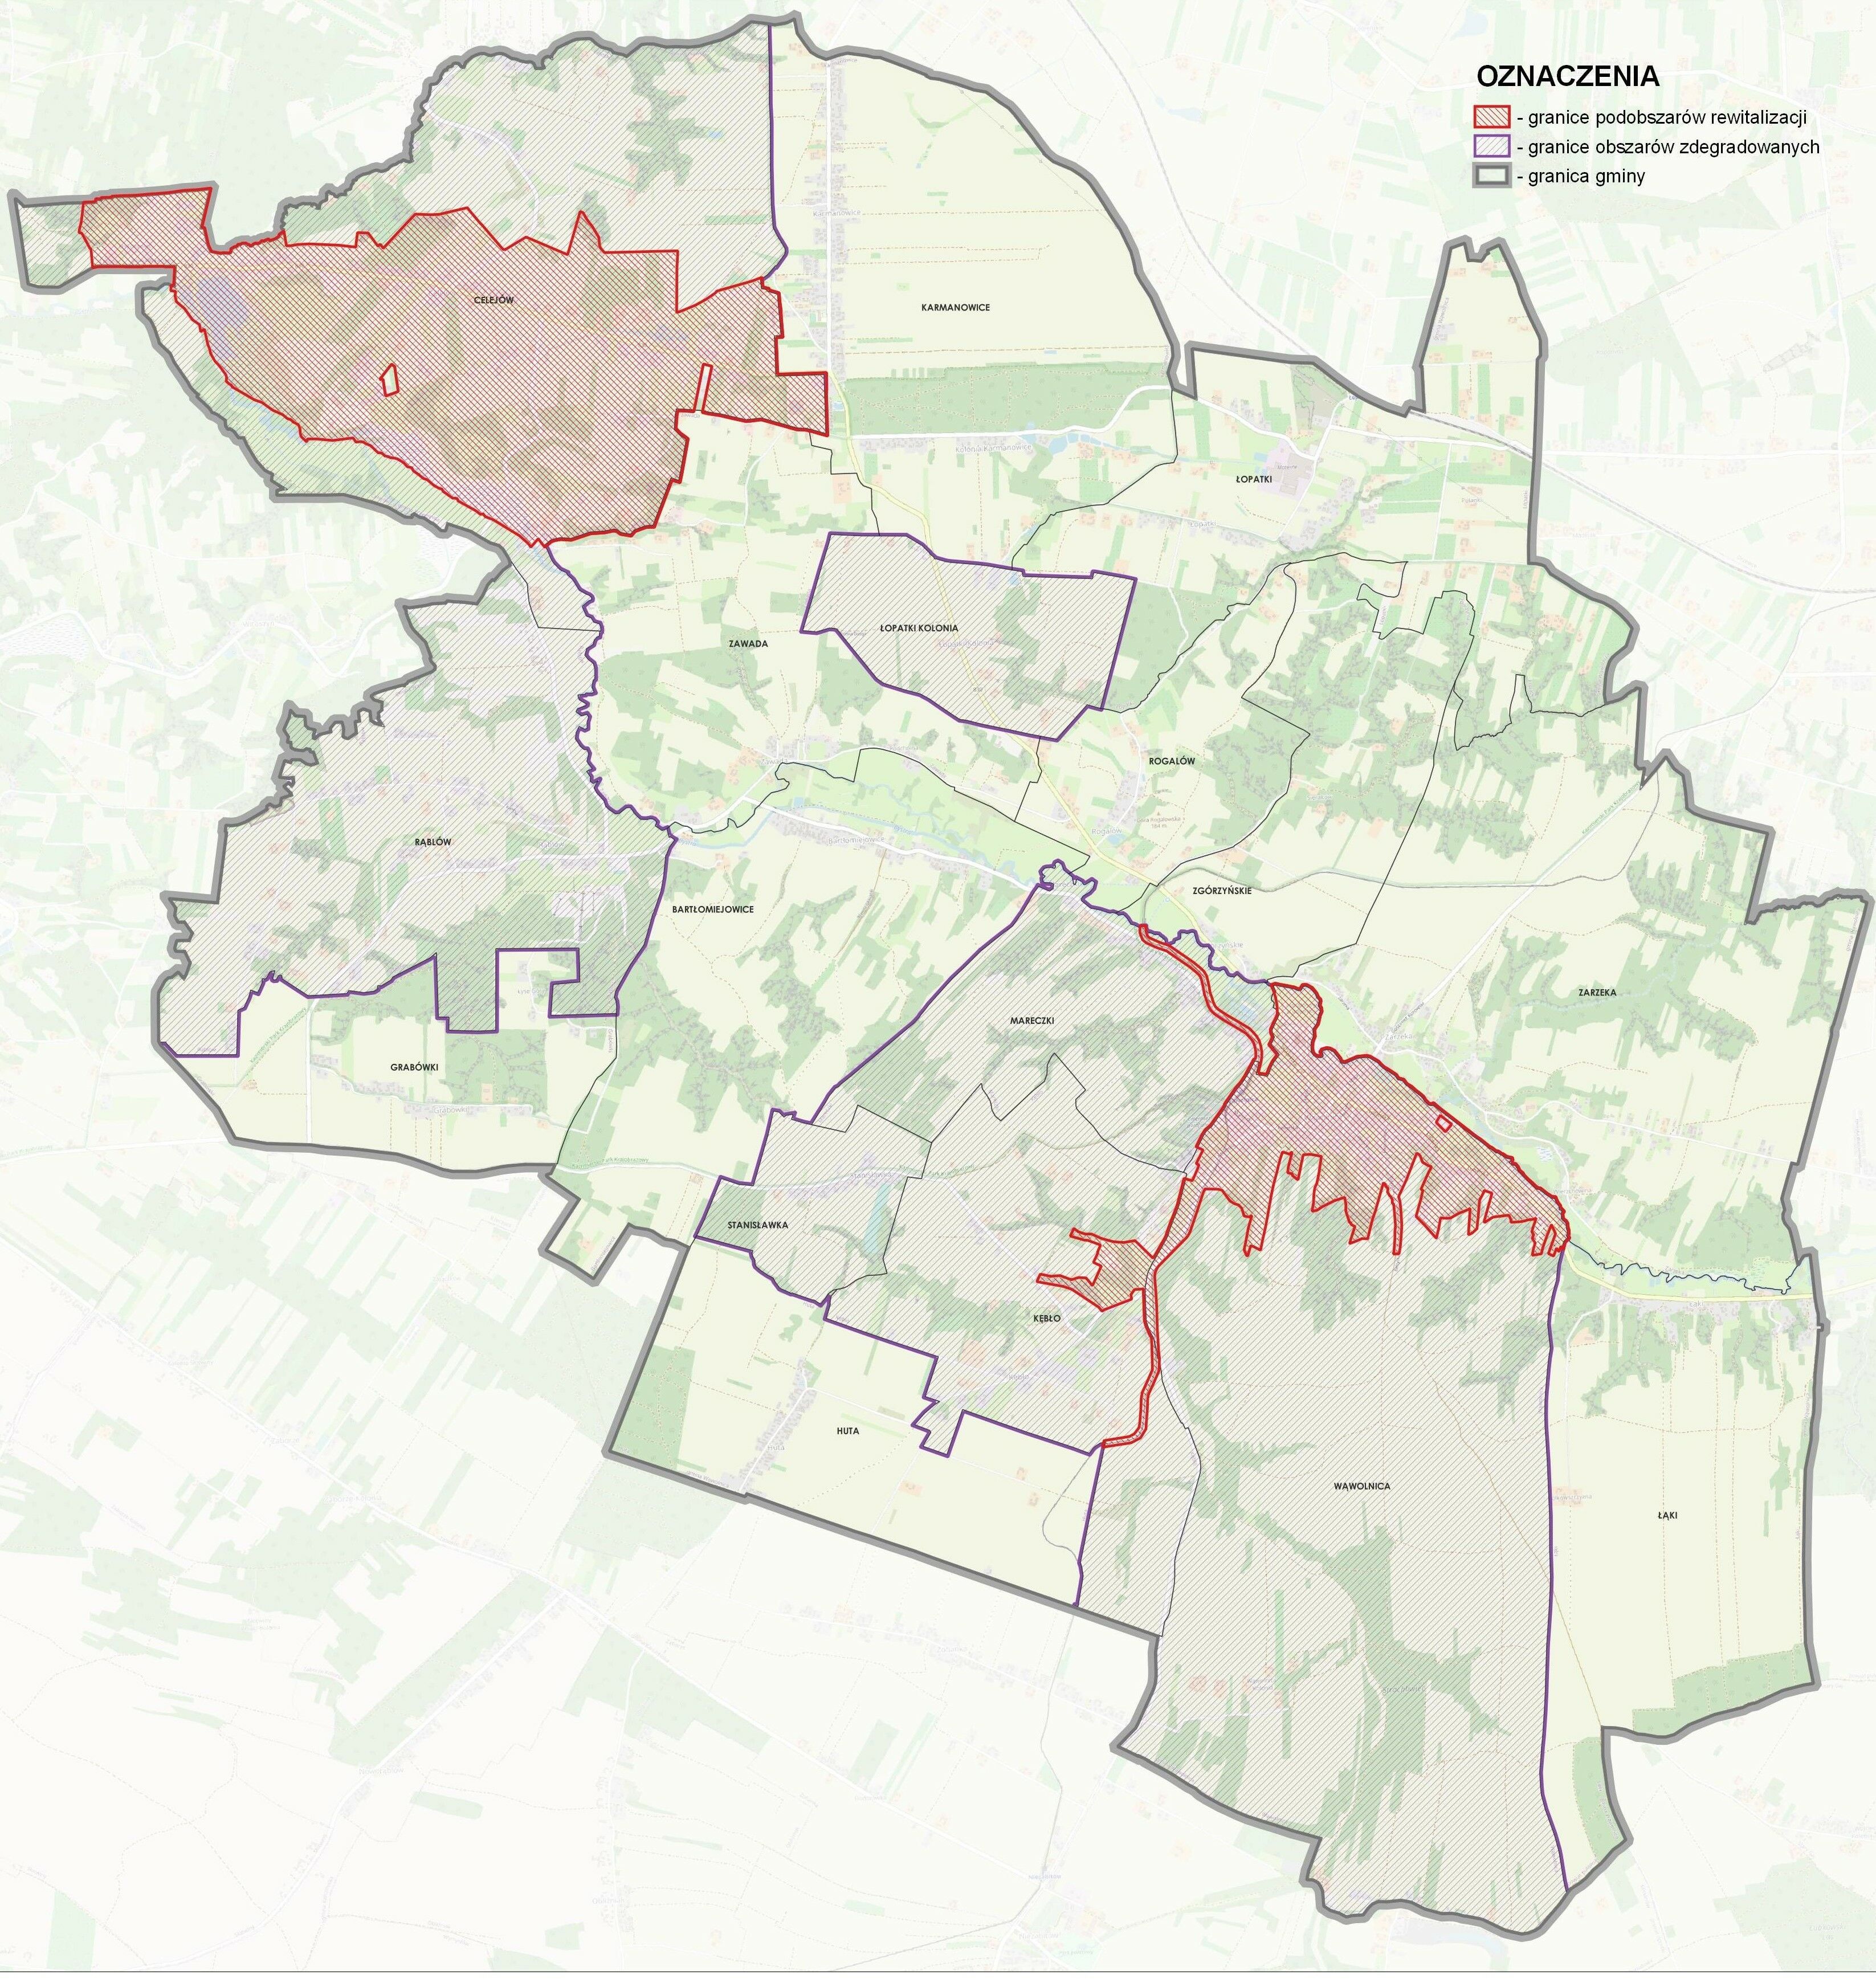 Mapa obszaru zdegradowanego i obszaru rewitalizacji